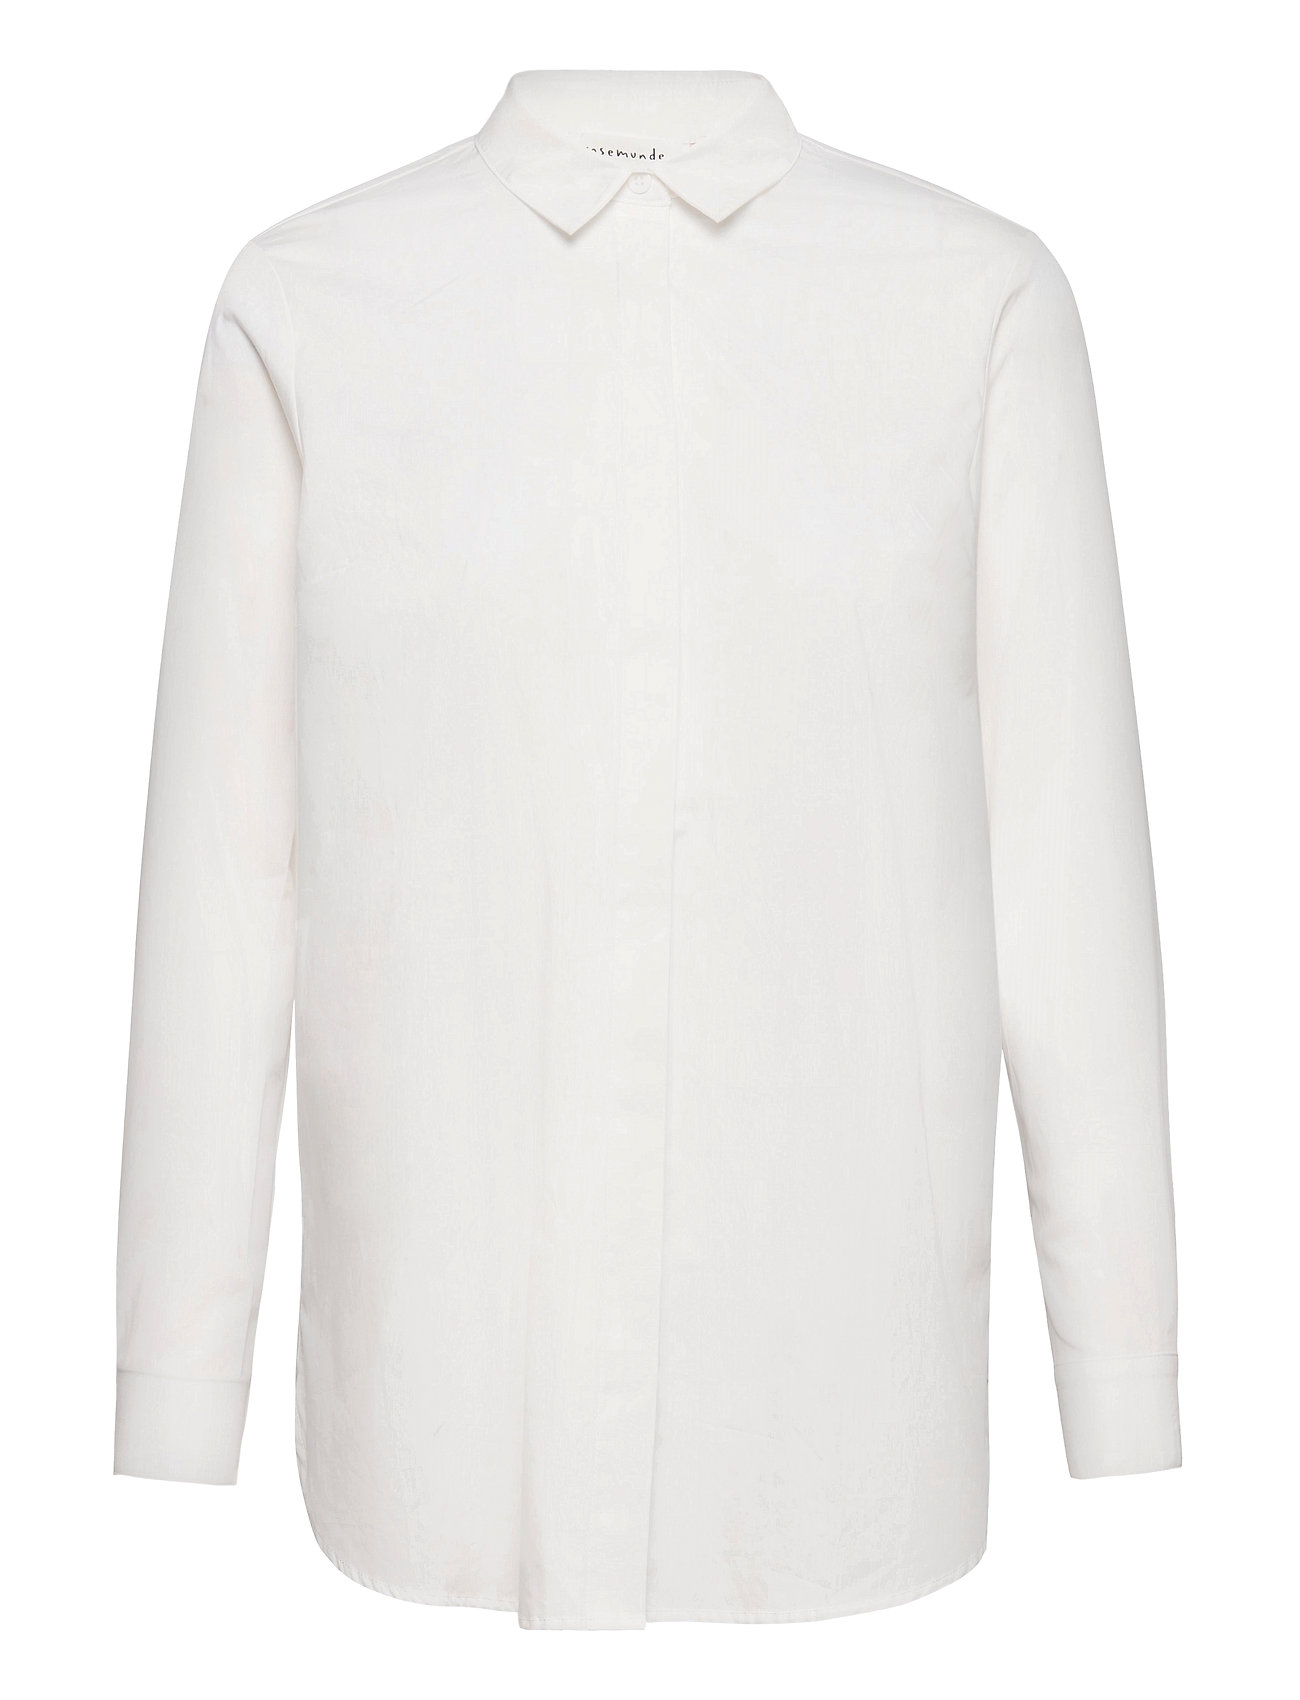 Meddele blandt Tips Hvid Rosemunde Organic Cotton Tunica Ls Langærmet Skjorte Hvid Rosemunde  langærmede skjorter for dame - Pashion.dk